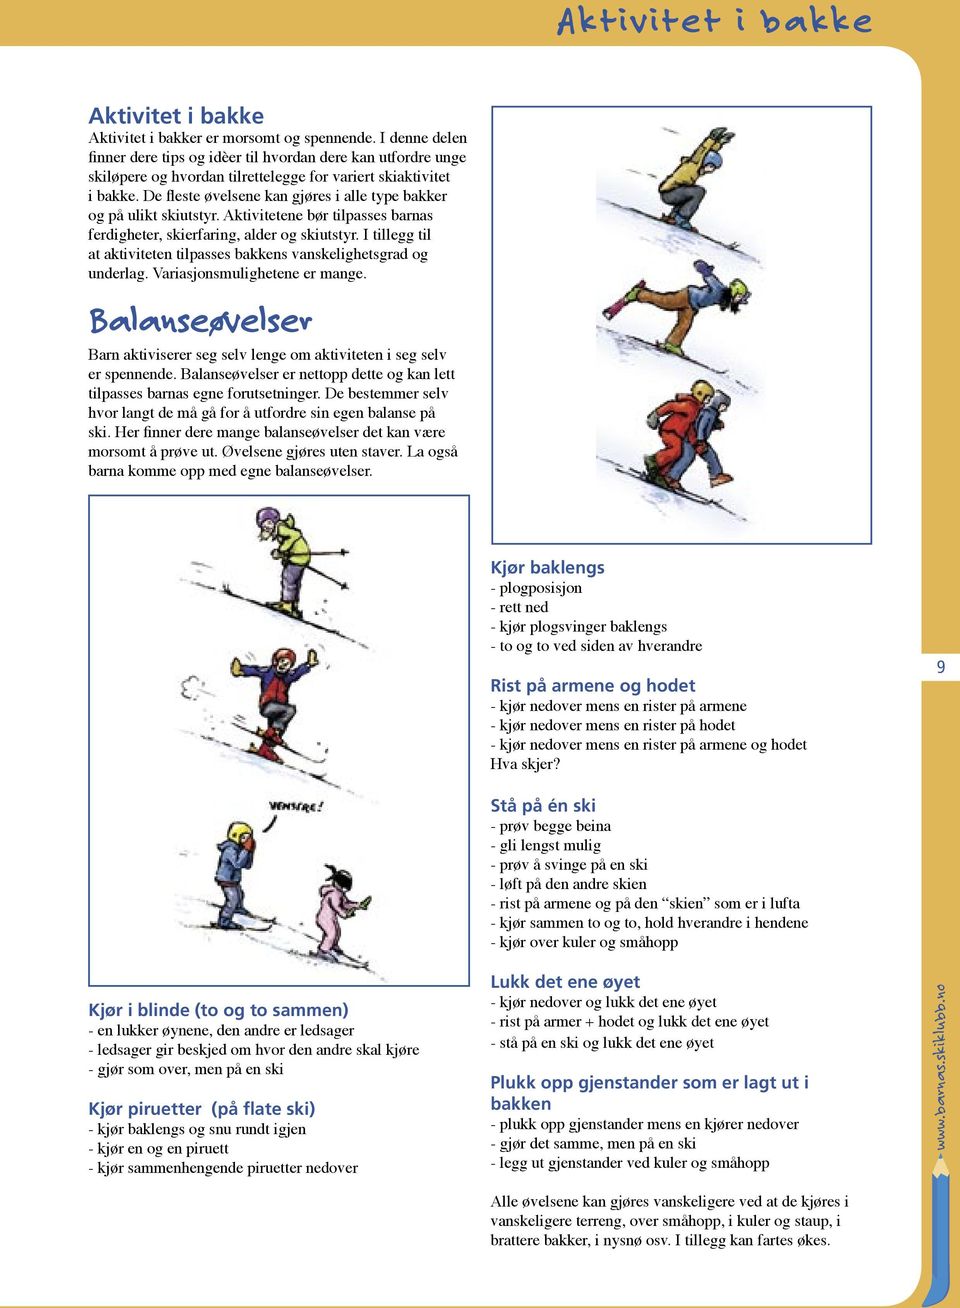 De fleste øvelsene kan gjøres i alle type bakker og på ulikt skiutstyr. Aktivitetene bør tilpasses barnas ferdigheter, skierfaring, alder og skiutstyr.